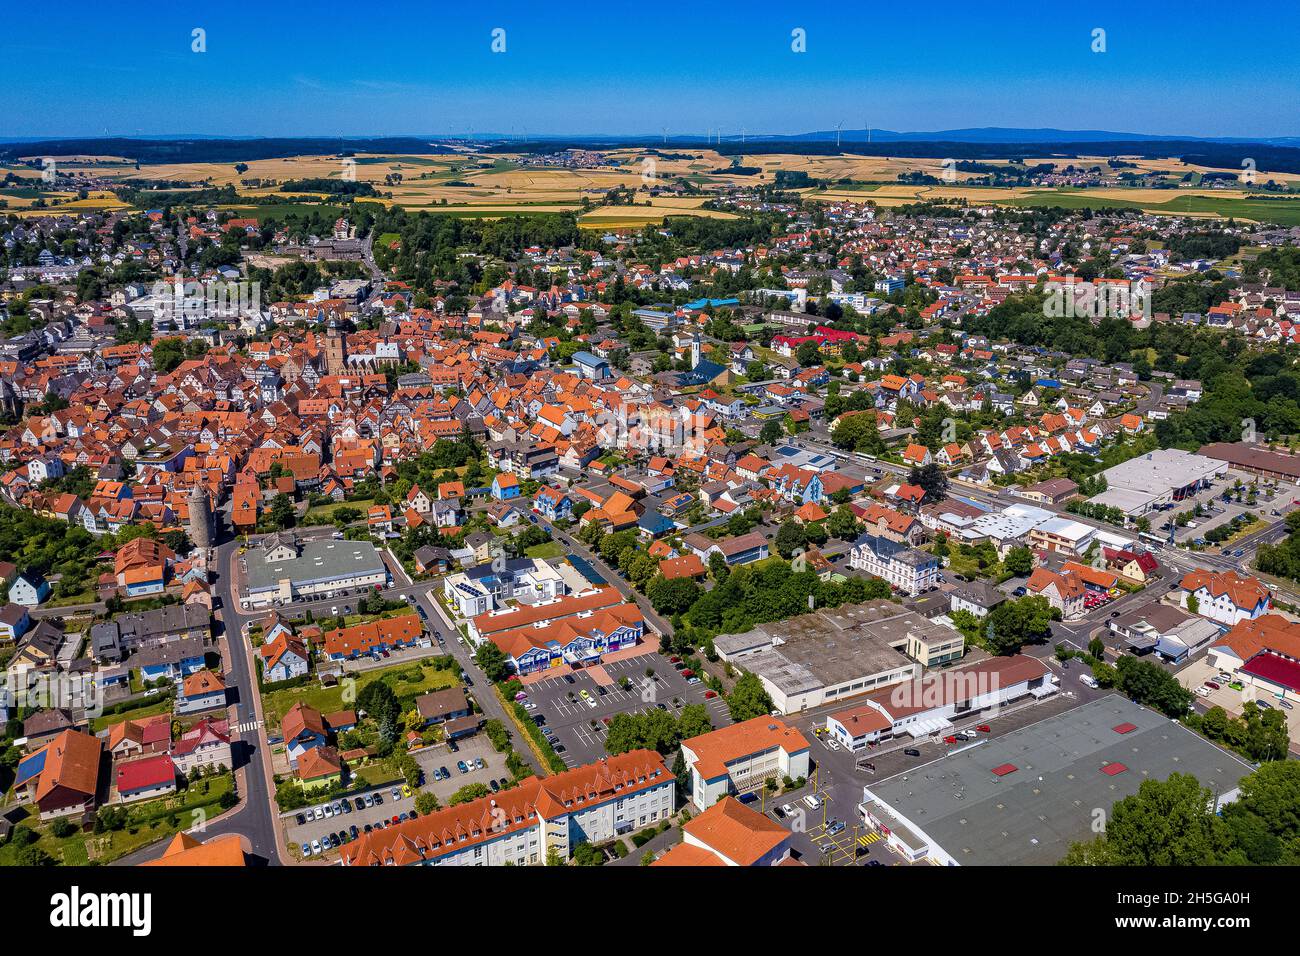 Die Stadt Alsfeld in Hessen aus der Luft - Luftbilder von Alsfeld | German Town Alsfeld in Hesse dall'alto Foto Stock